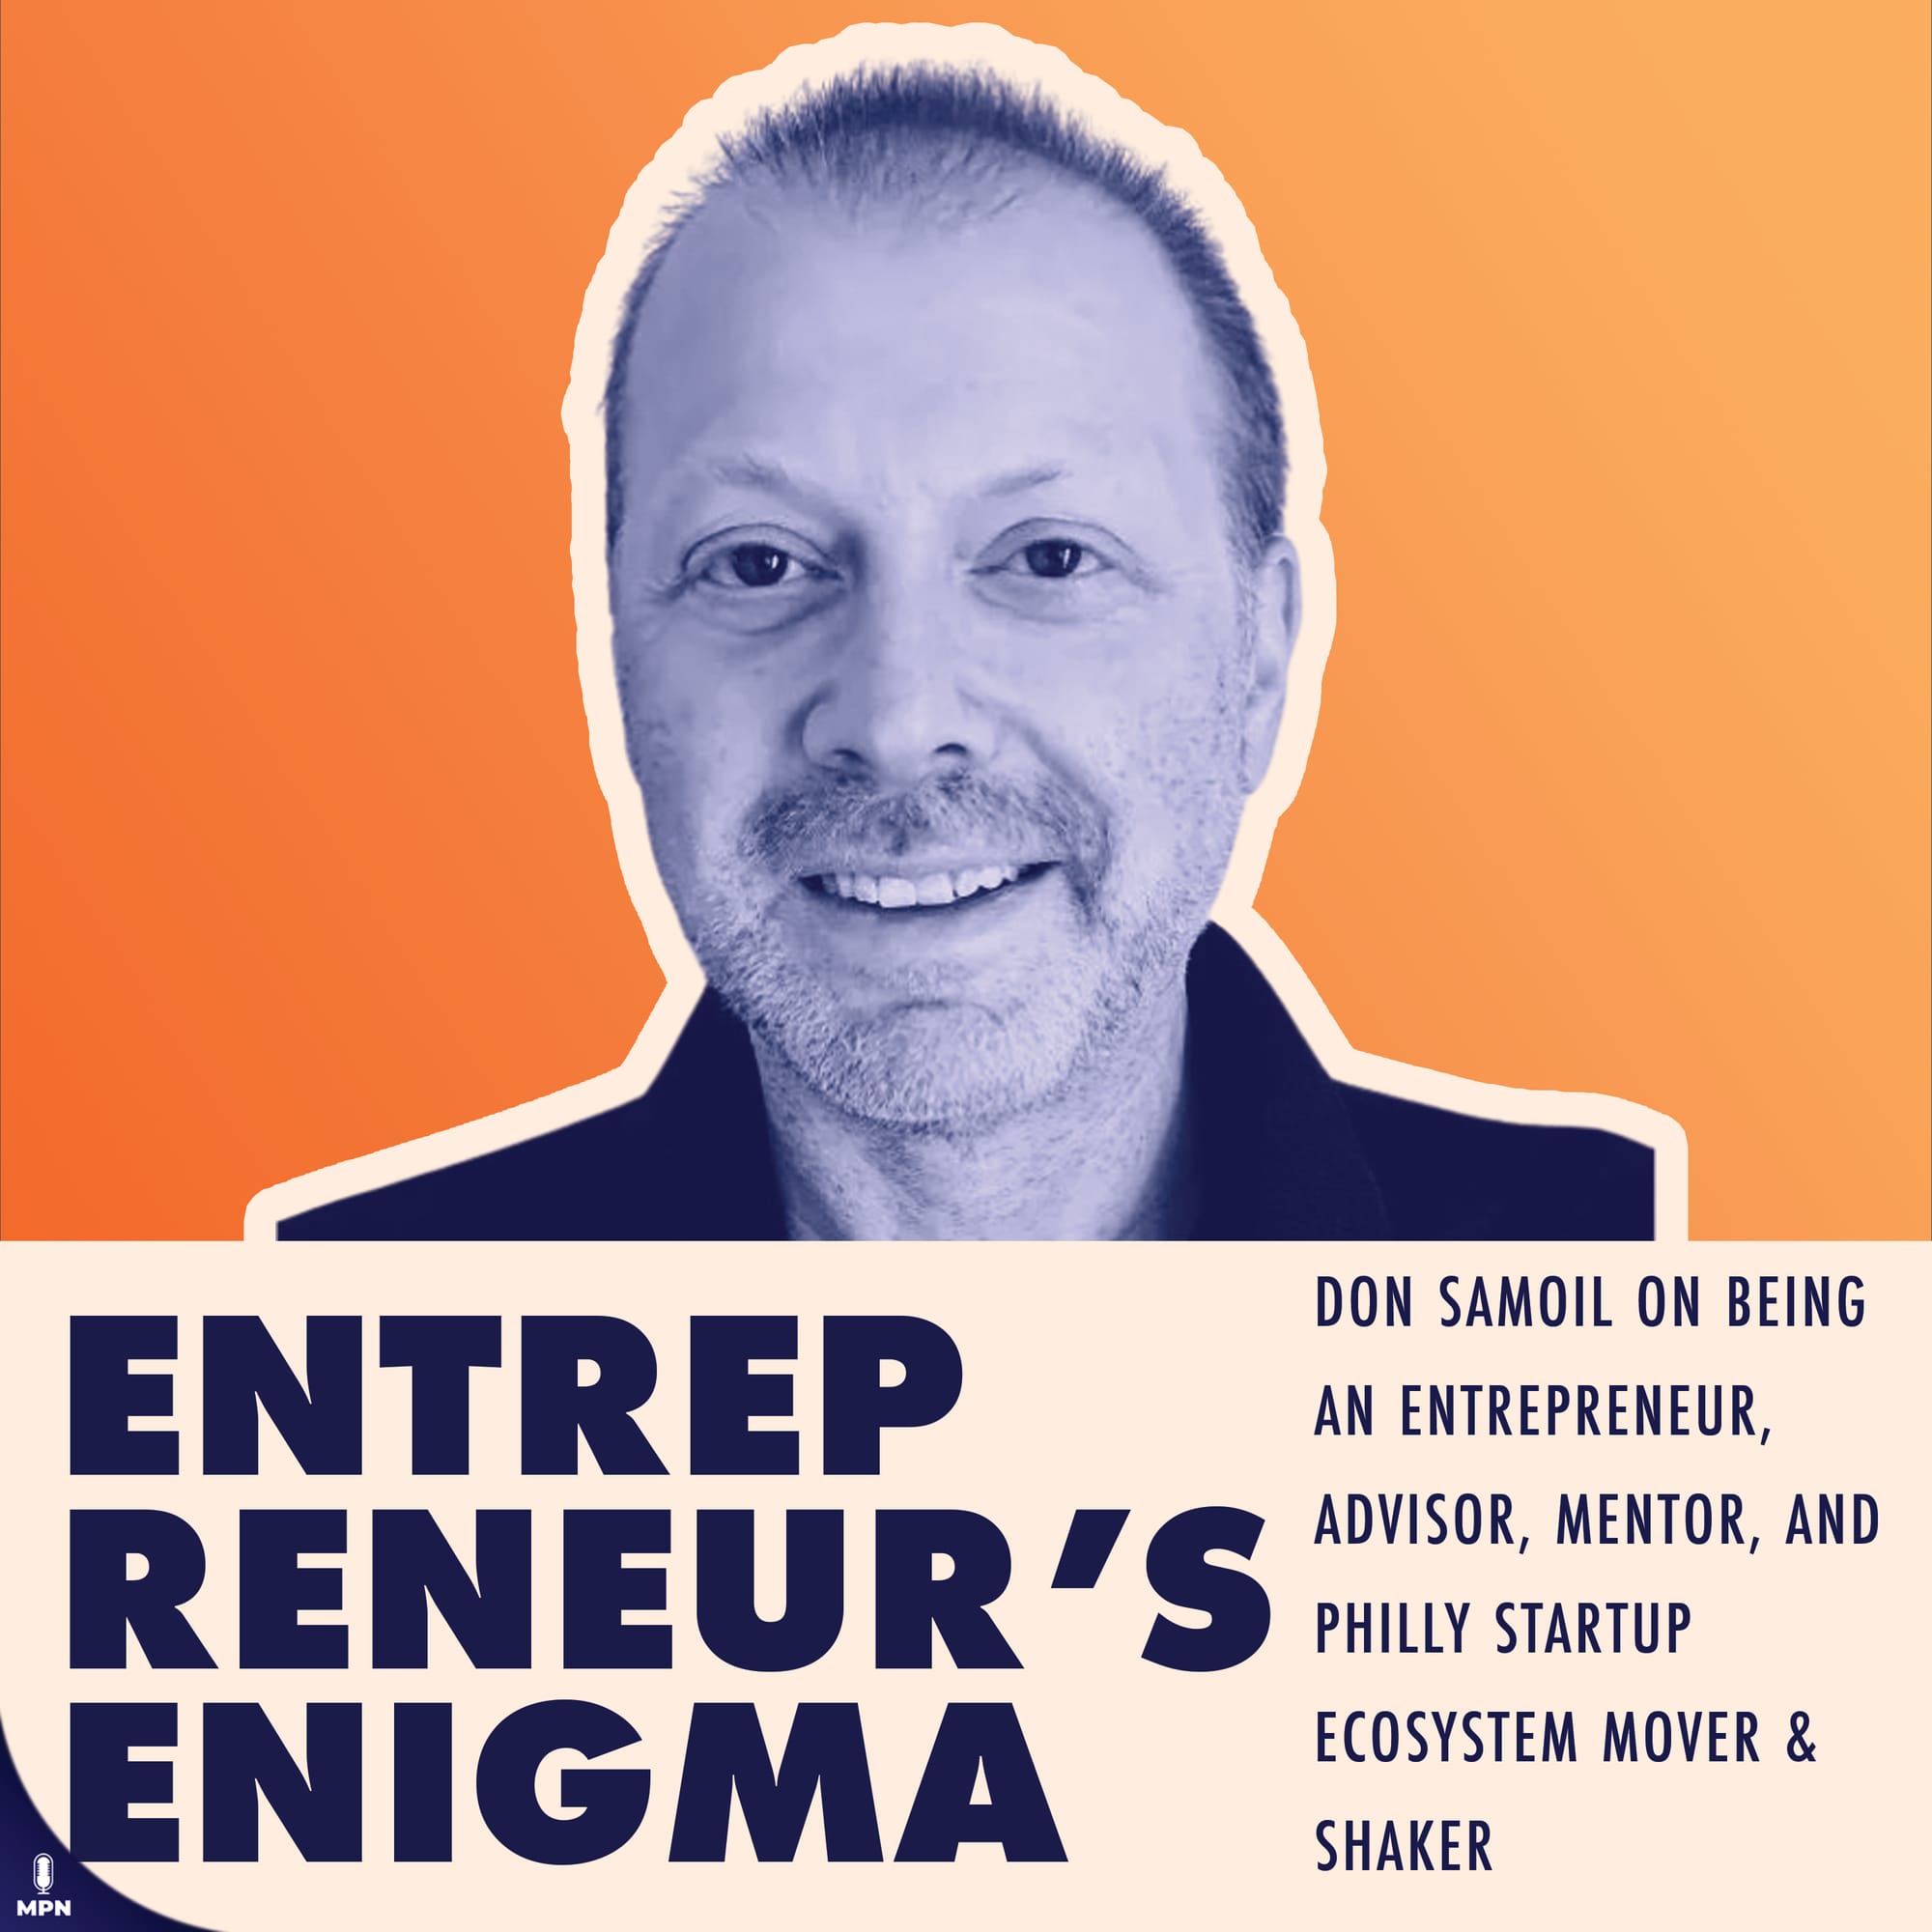 Entrepreneur's Enigma album art. Don Samoil on being an entrepreneur, advisor, mentor, and Philly Startup ecosystem mover & shaker